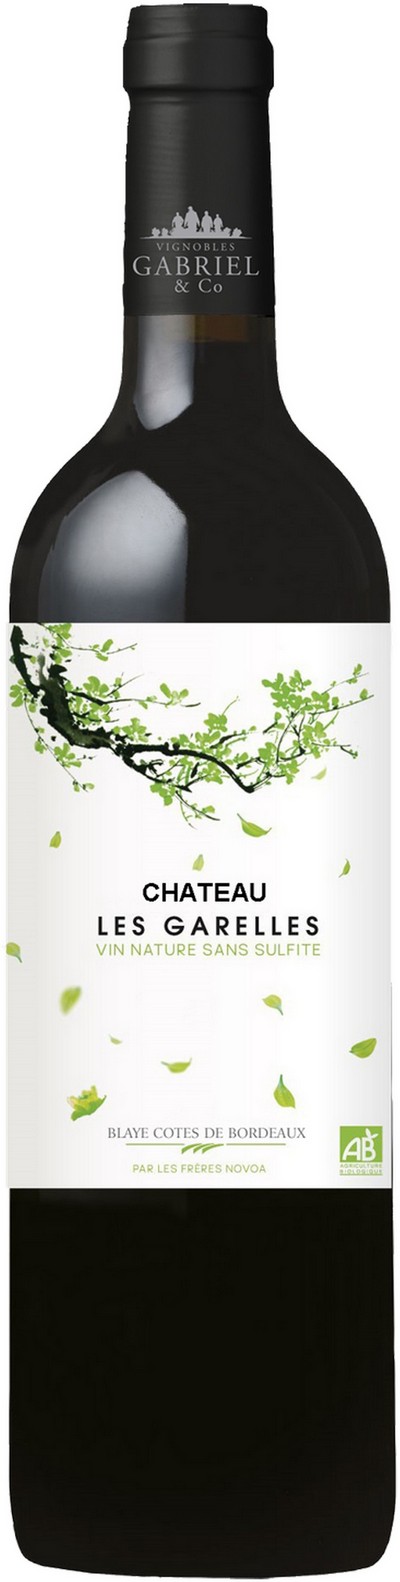 chateau-les-garelles-vin-nature-sans-sulfite-bordeaux-2019